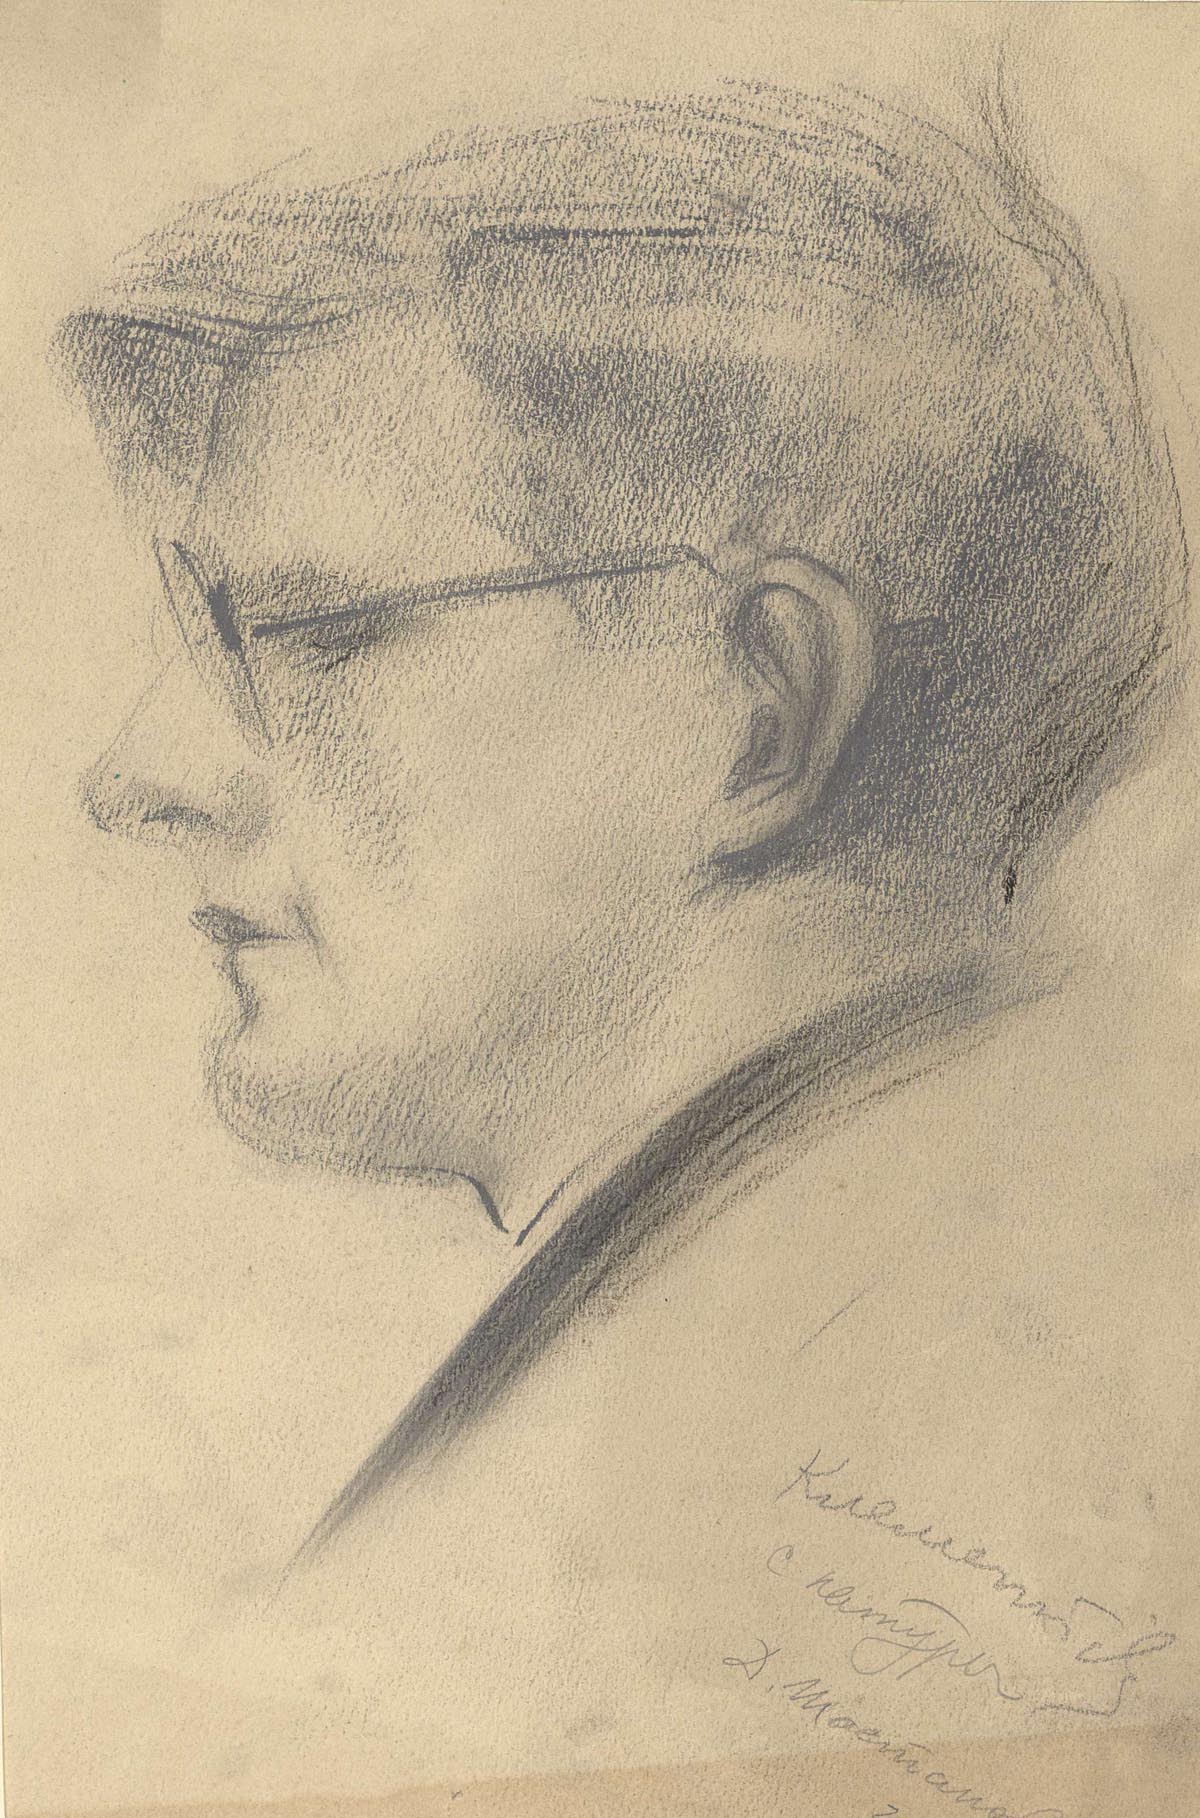 Гликман портреты Шостаковича